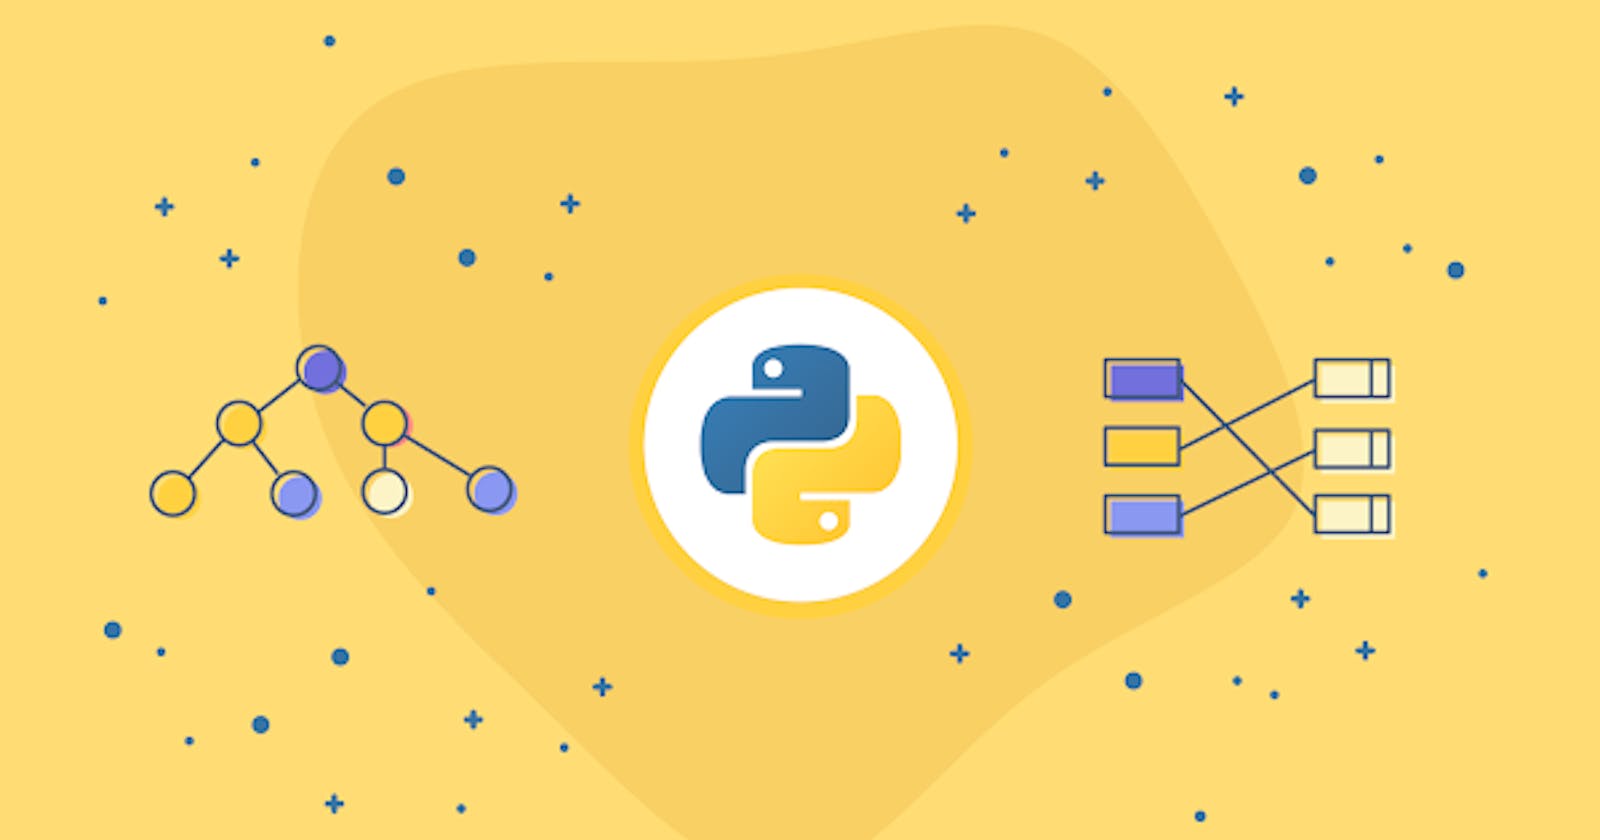 Inbuilt data structures in Python